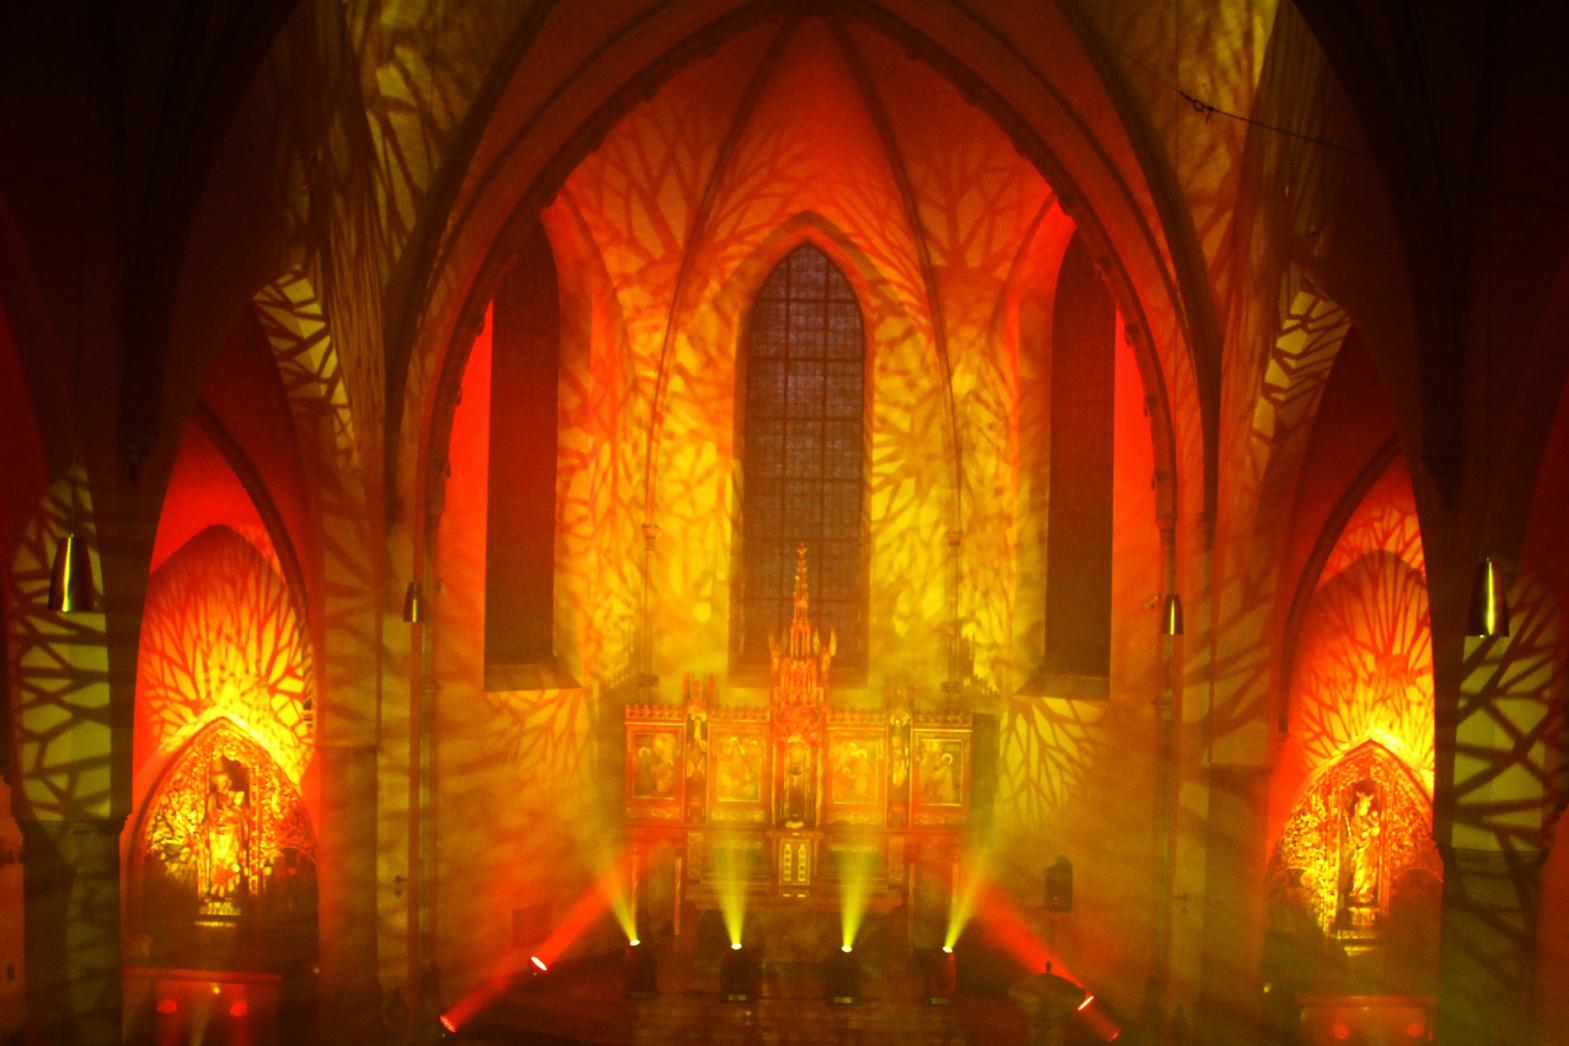 Illumination (c) Bistum Mainz